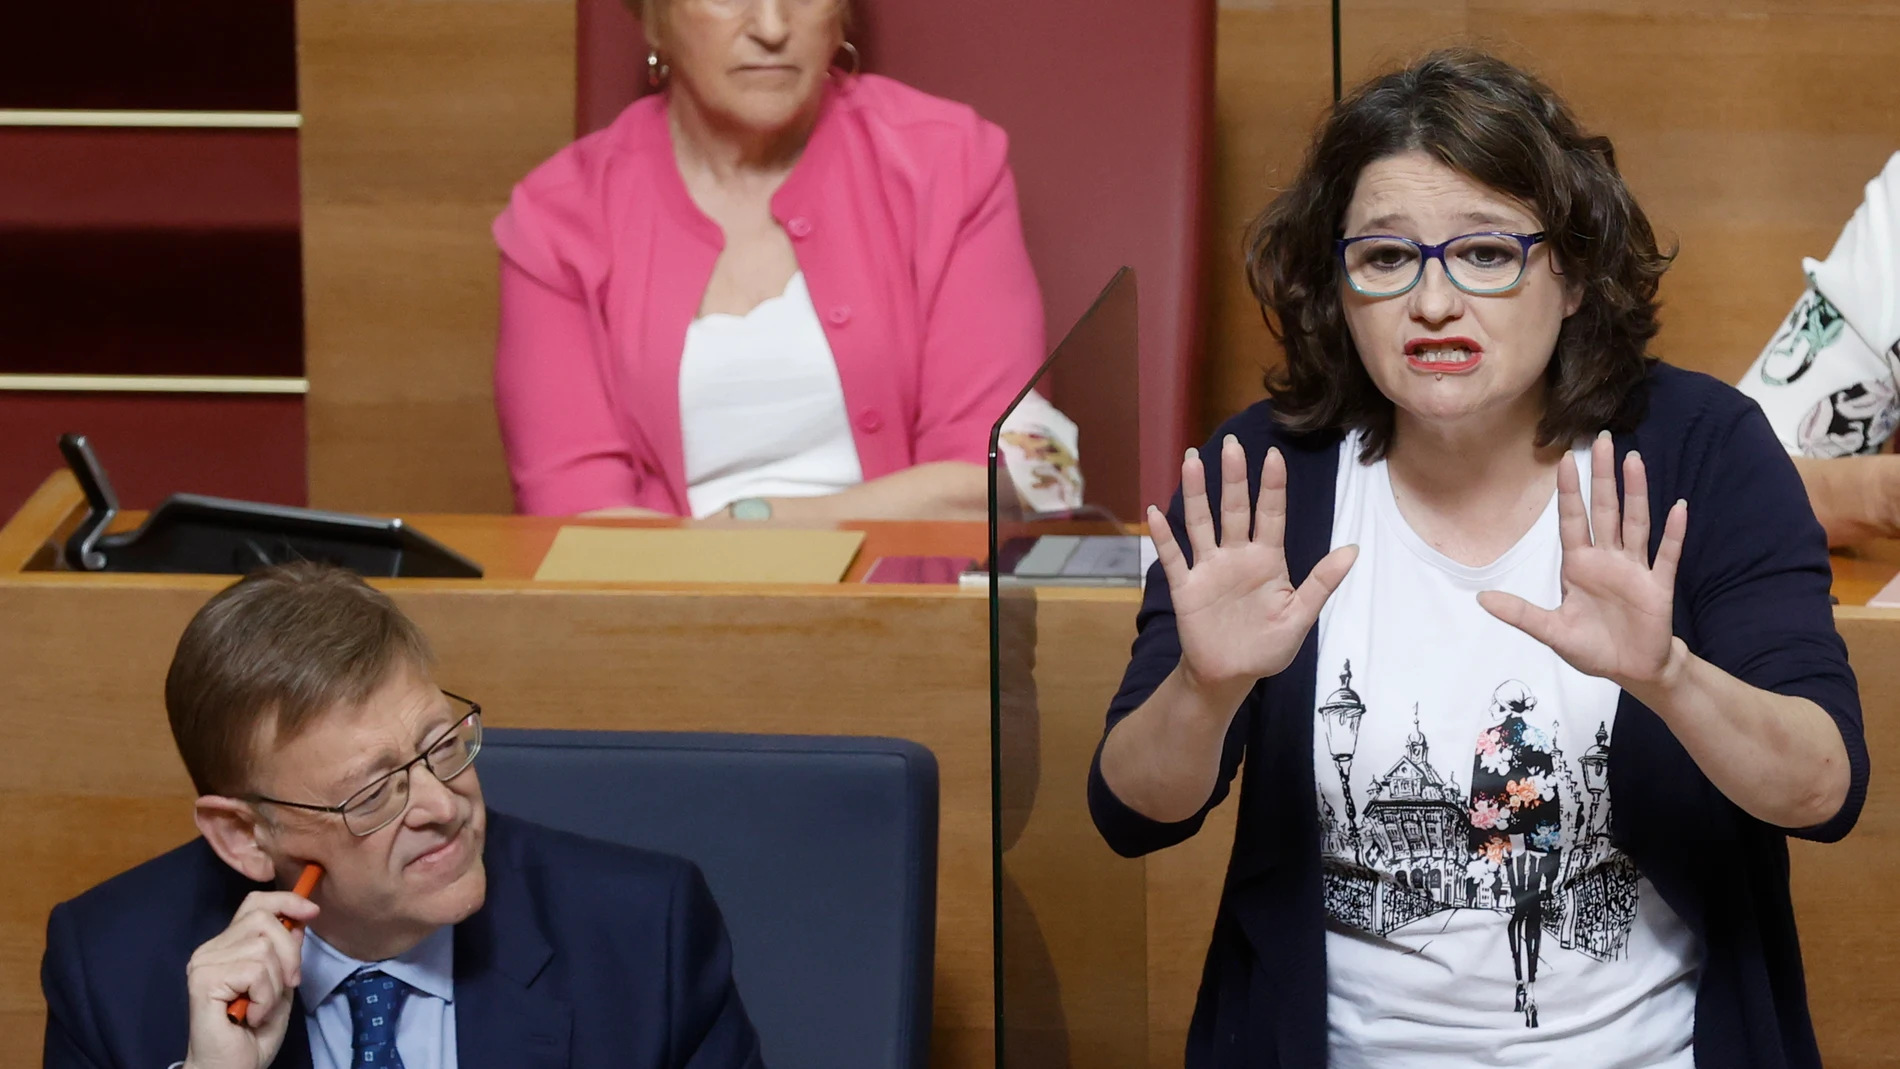 La vicepresidenta y Portavoz de la Generalitat Valenciana, Mónica Oltra,en la imagen, junto al presidente Puig, interviene durante la sesión de control en Les Corts